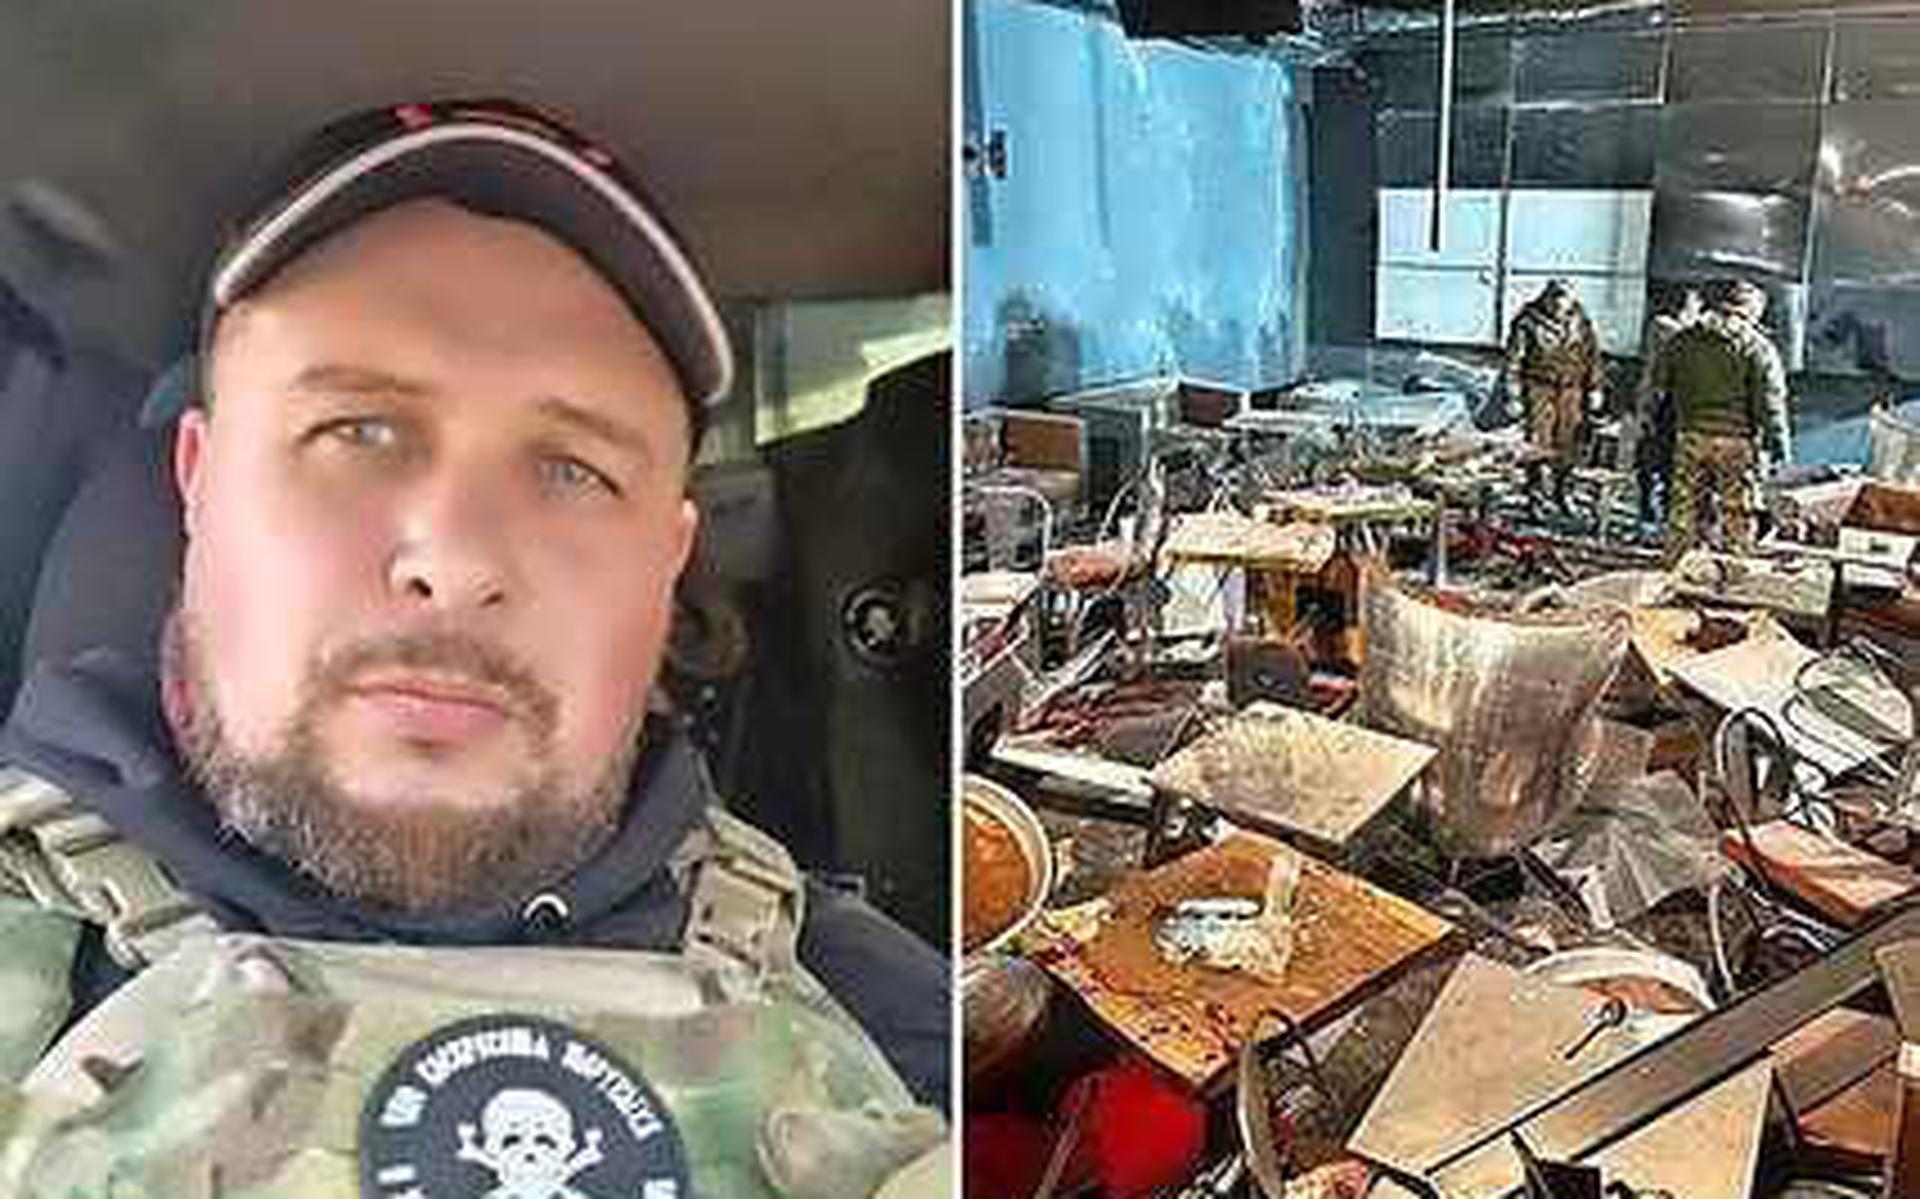 De 40-jarige militaire blogger Vladlen Tatarsky kwam zondag om het leven toen er een bom ontplofte in een café in Sint-Petersburg.